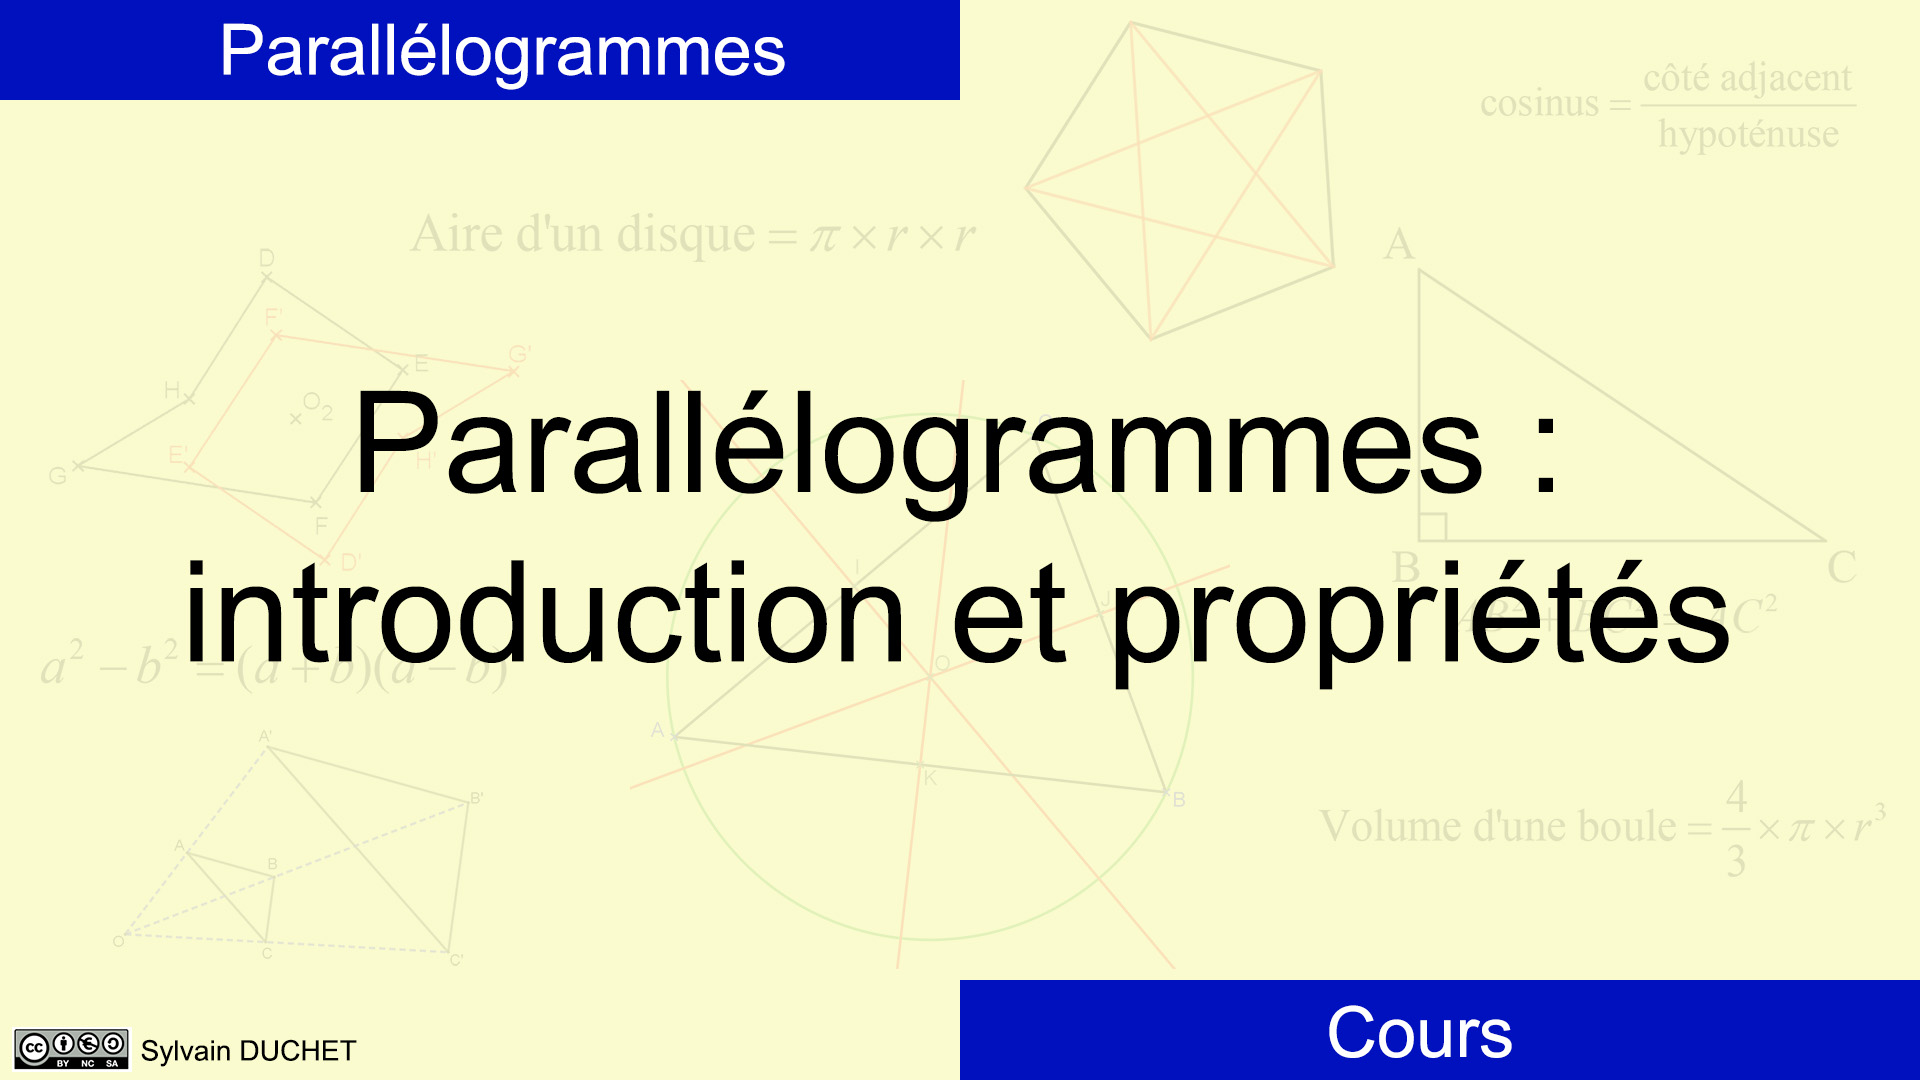 Parallélogrammes - Introduction et propriétés